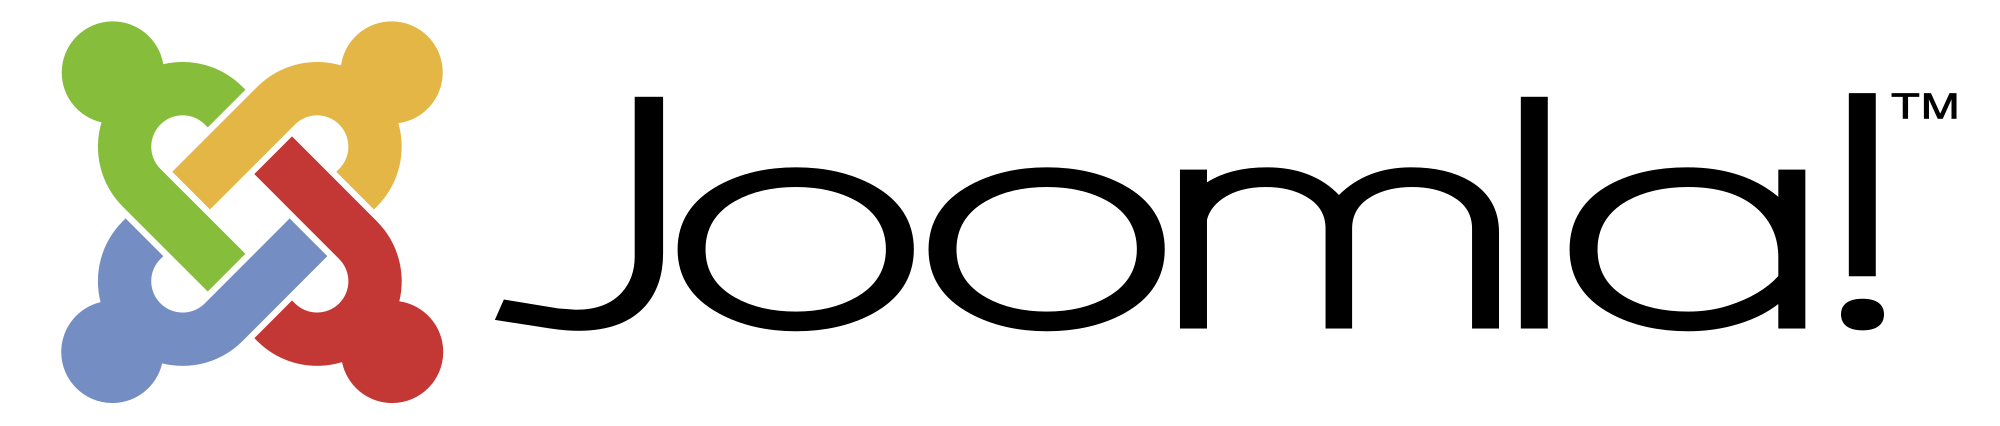 Logo Joomla.